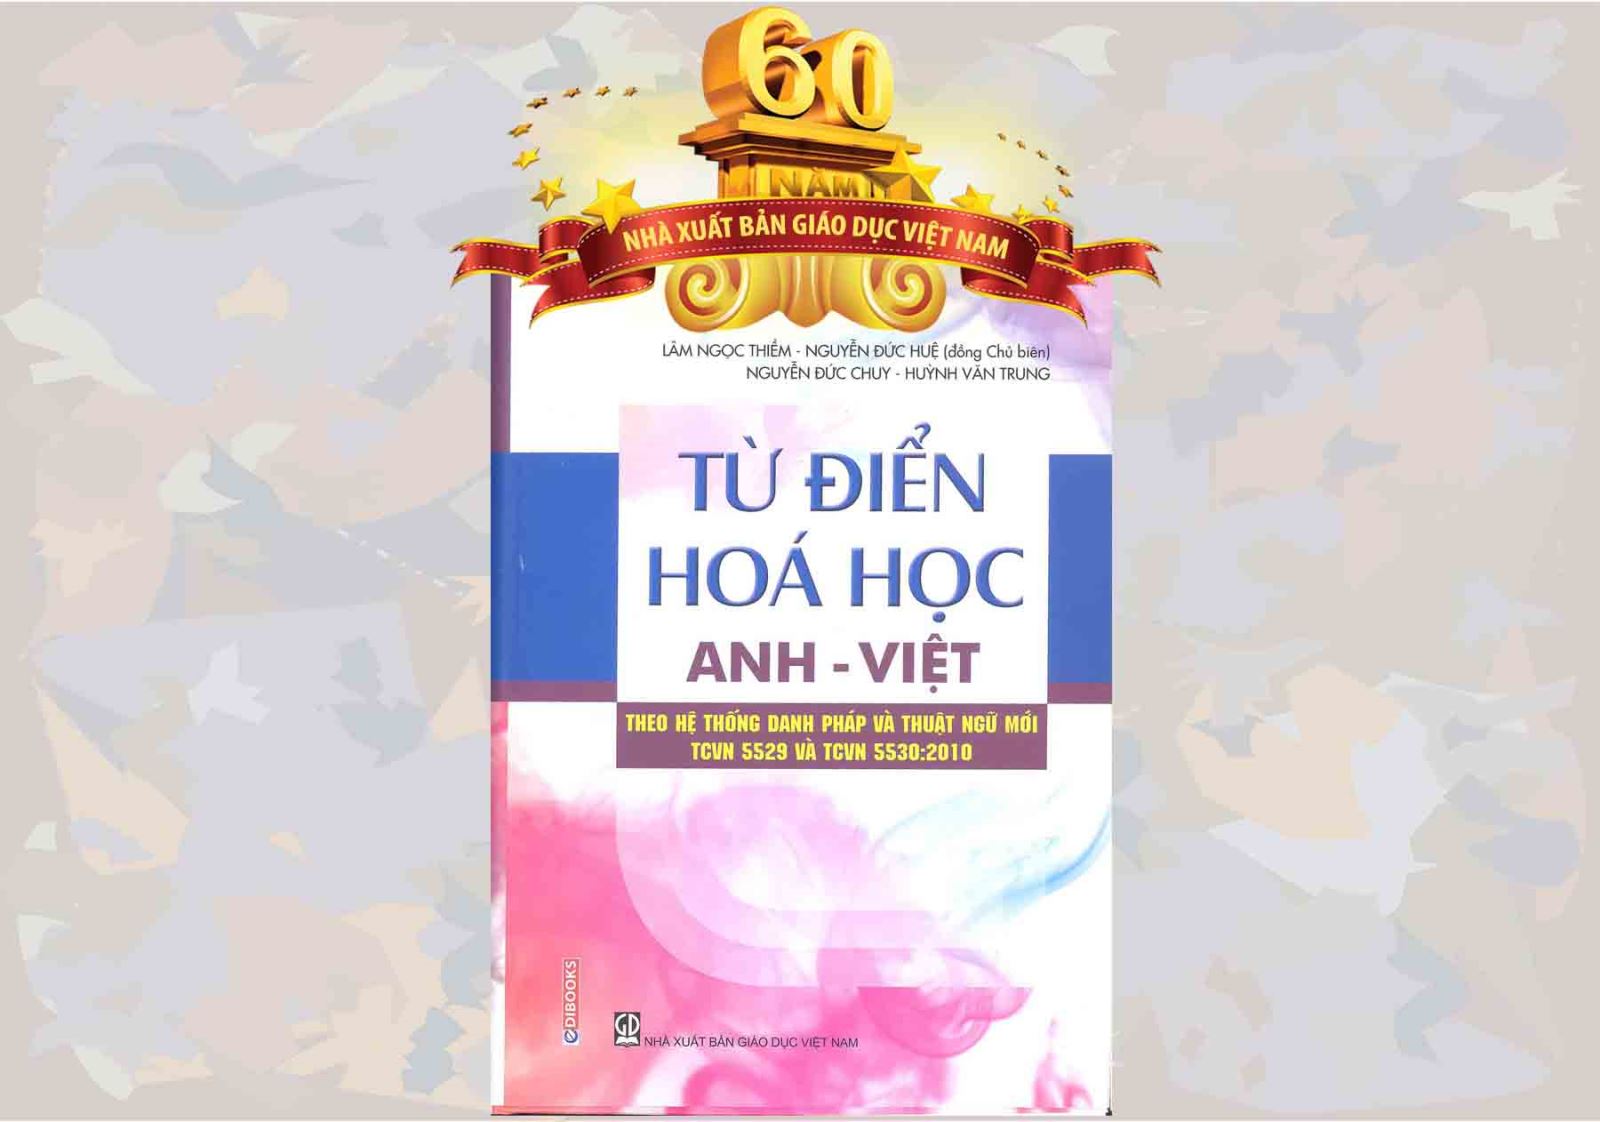 Từ điển hóa học Anh - Việt